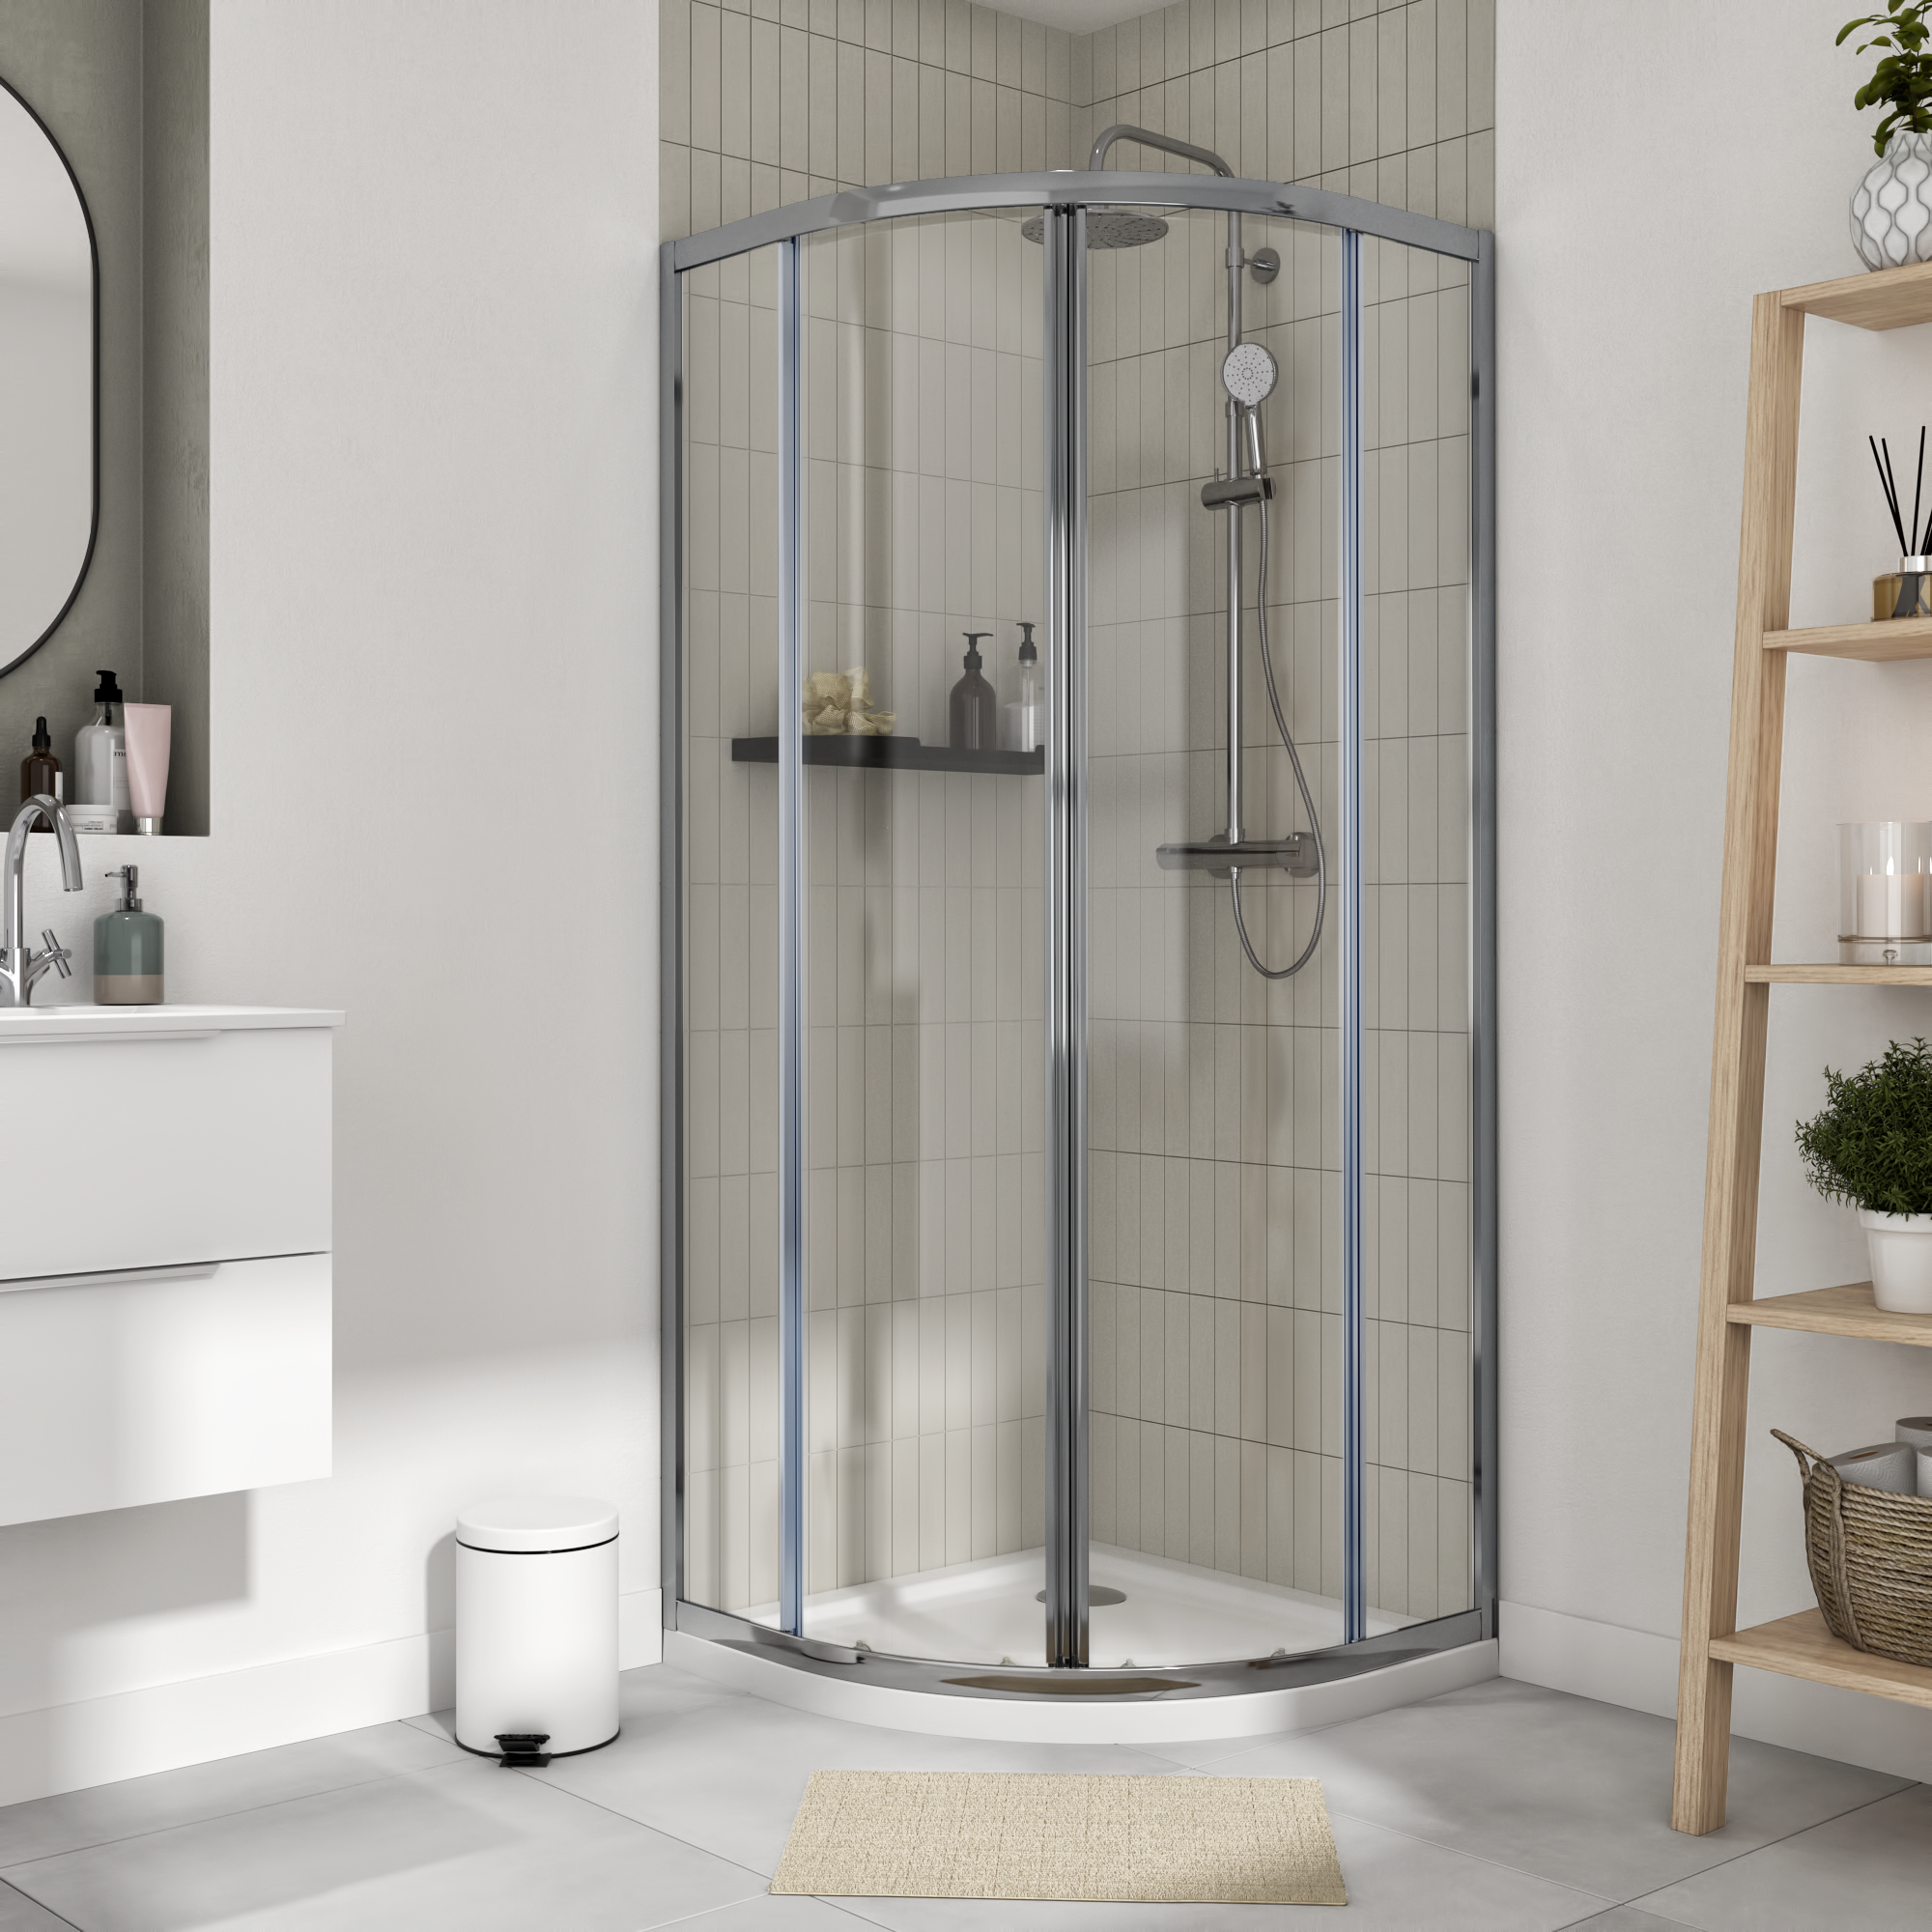 Douches mobiles : 3 solutions simples et pas chères pour se laver